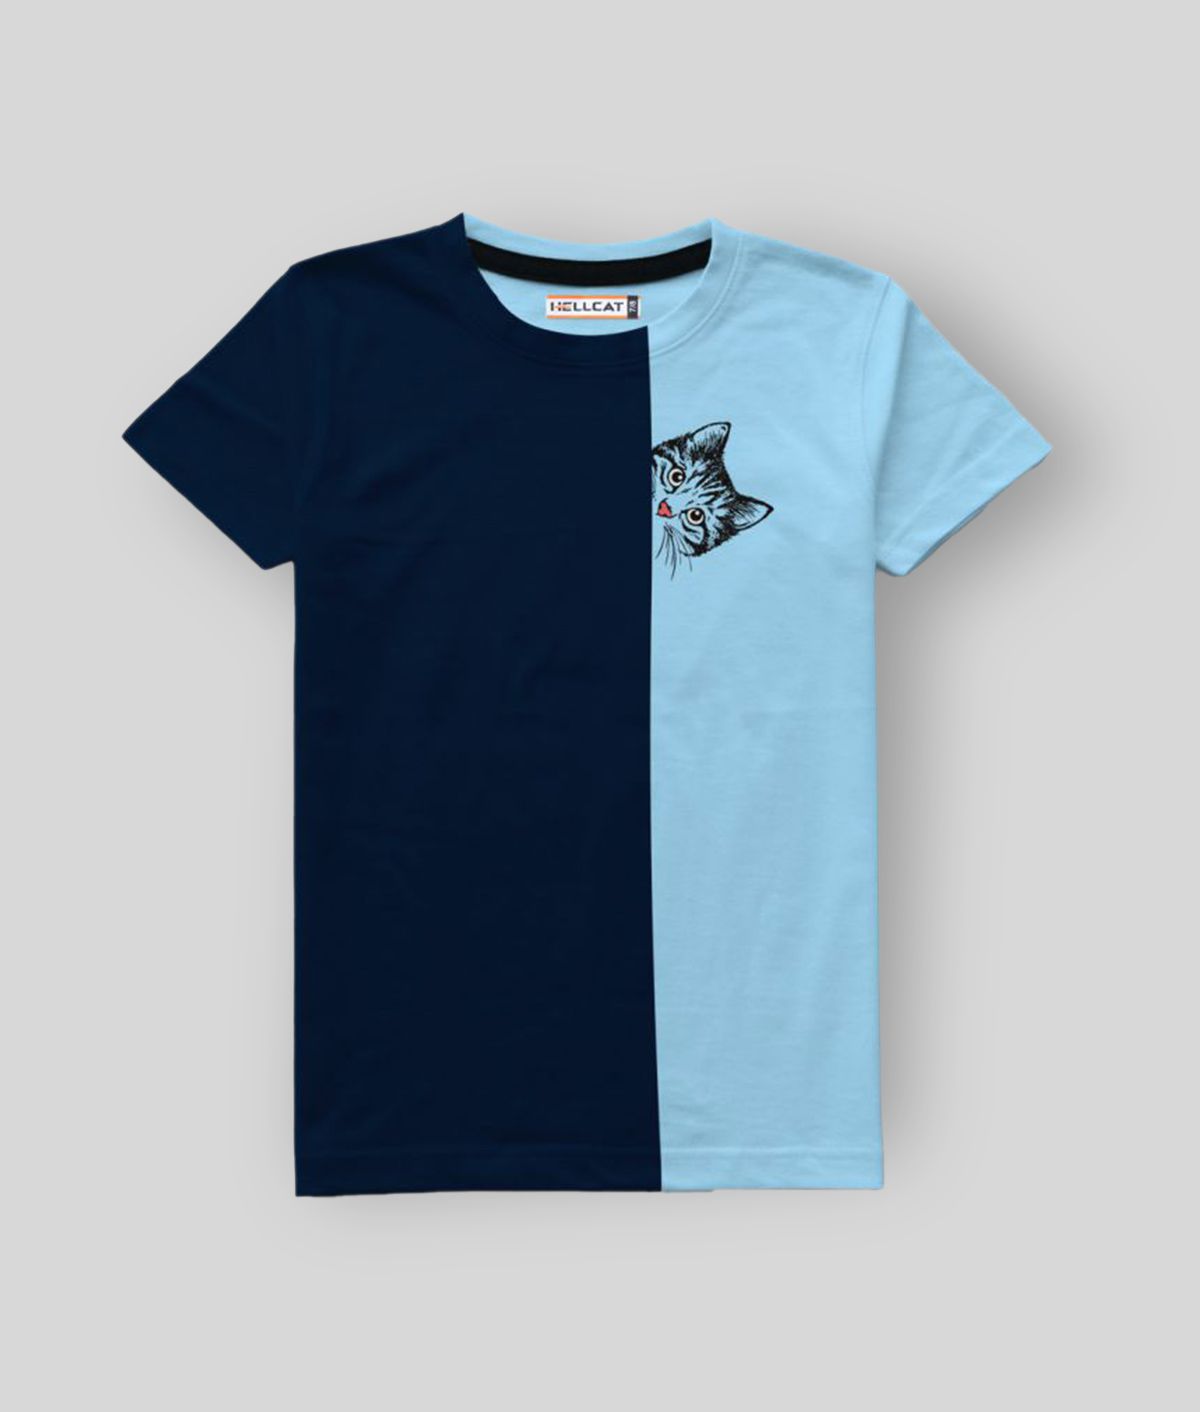     			HELLCAT - Sky Blue Cotton Blend Boy's T-Shirt ( Pack of 1 )